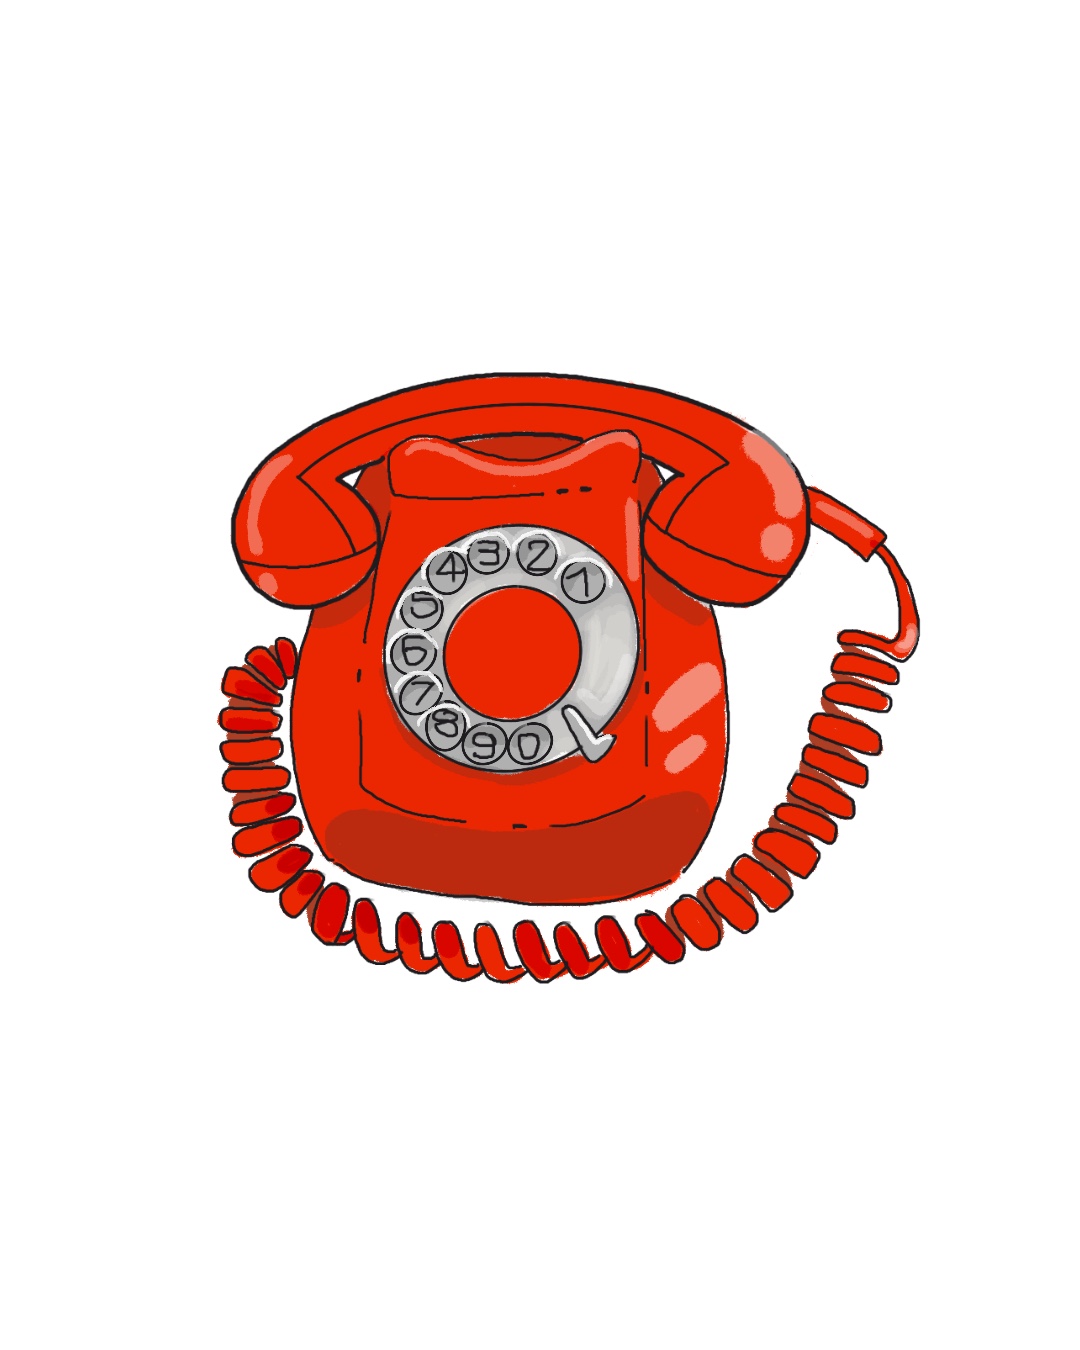 [174/365] Teléfono rojo